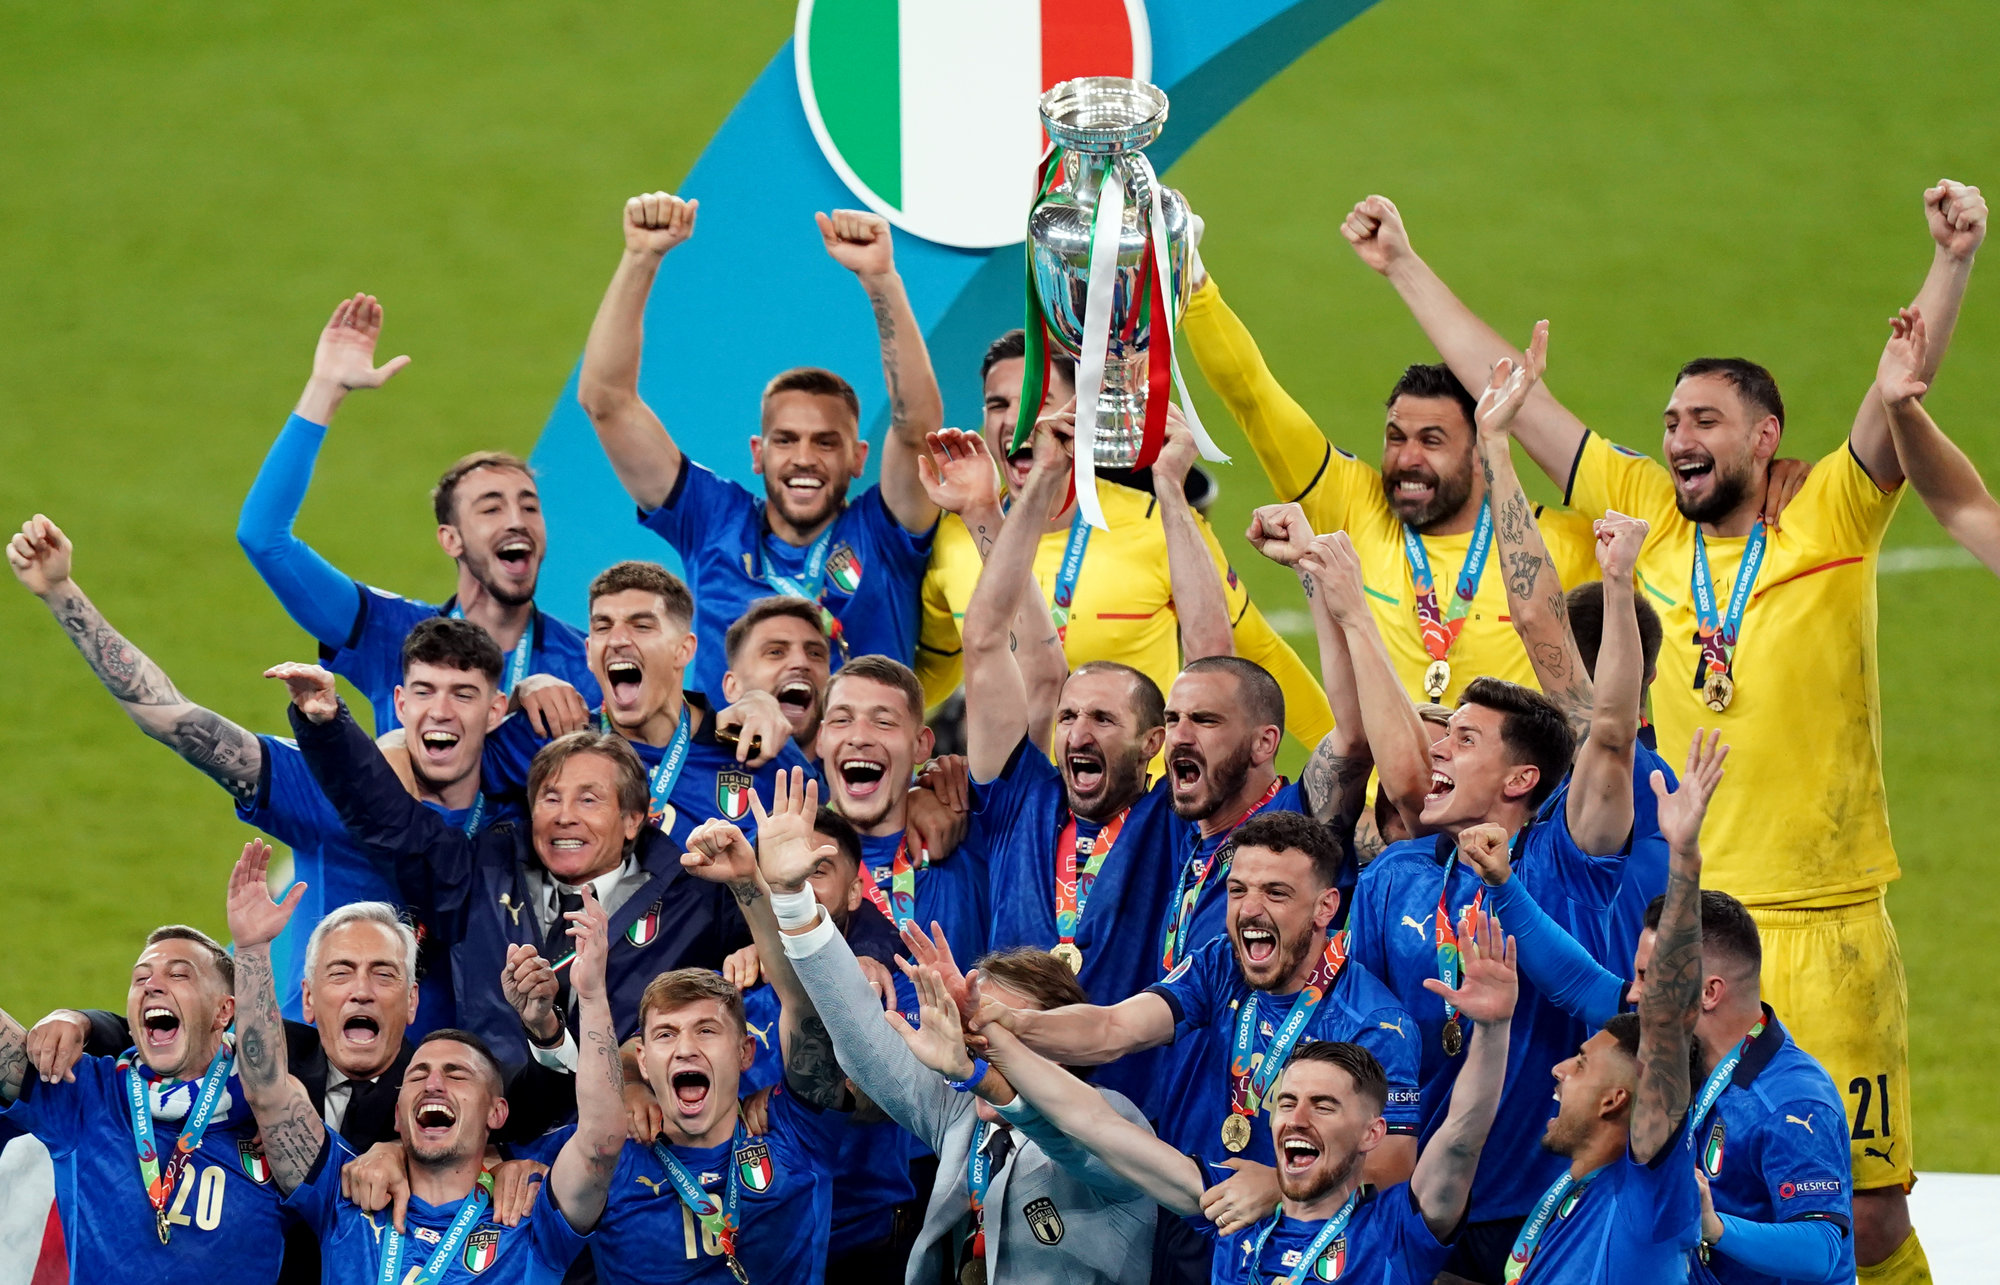 Italy v England Sunday 11th July 2021 European